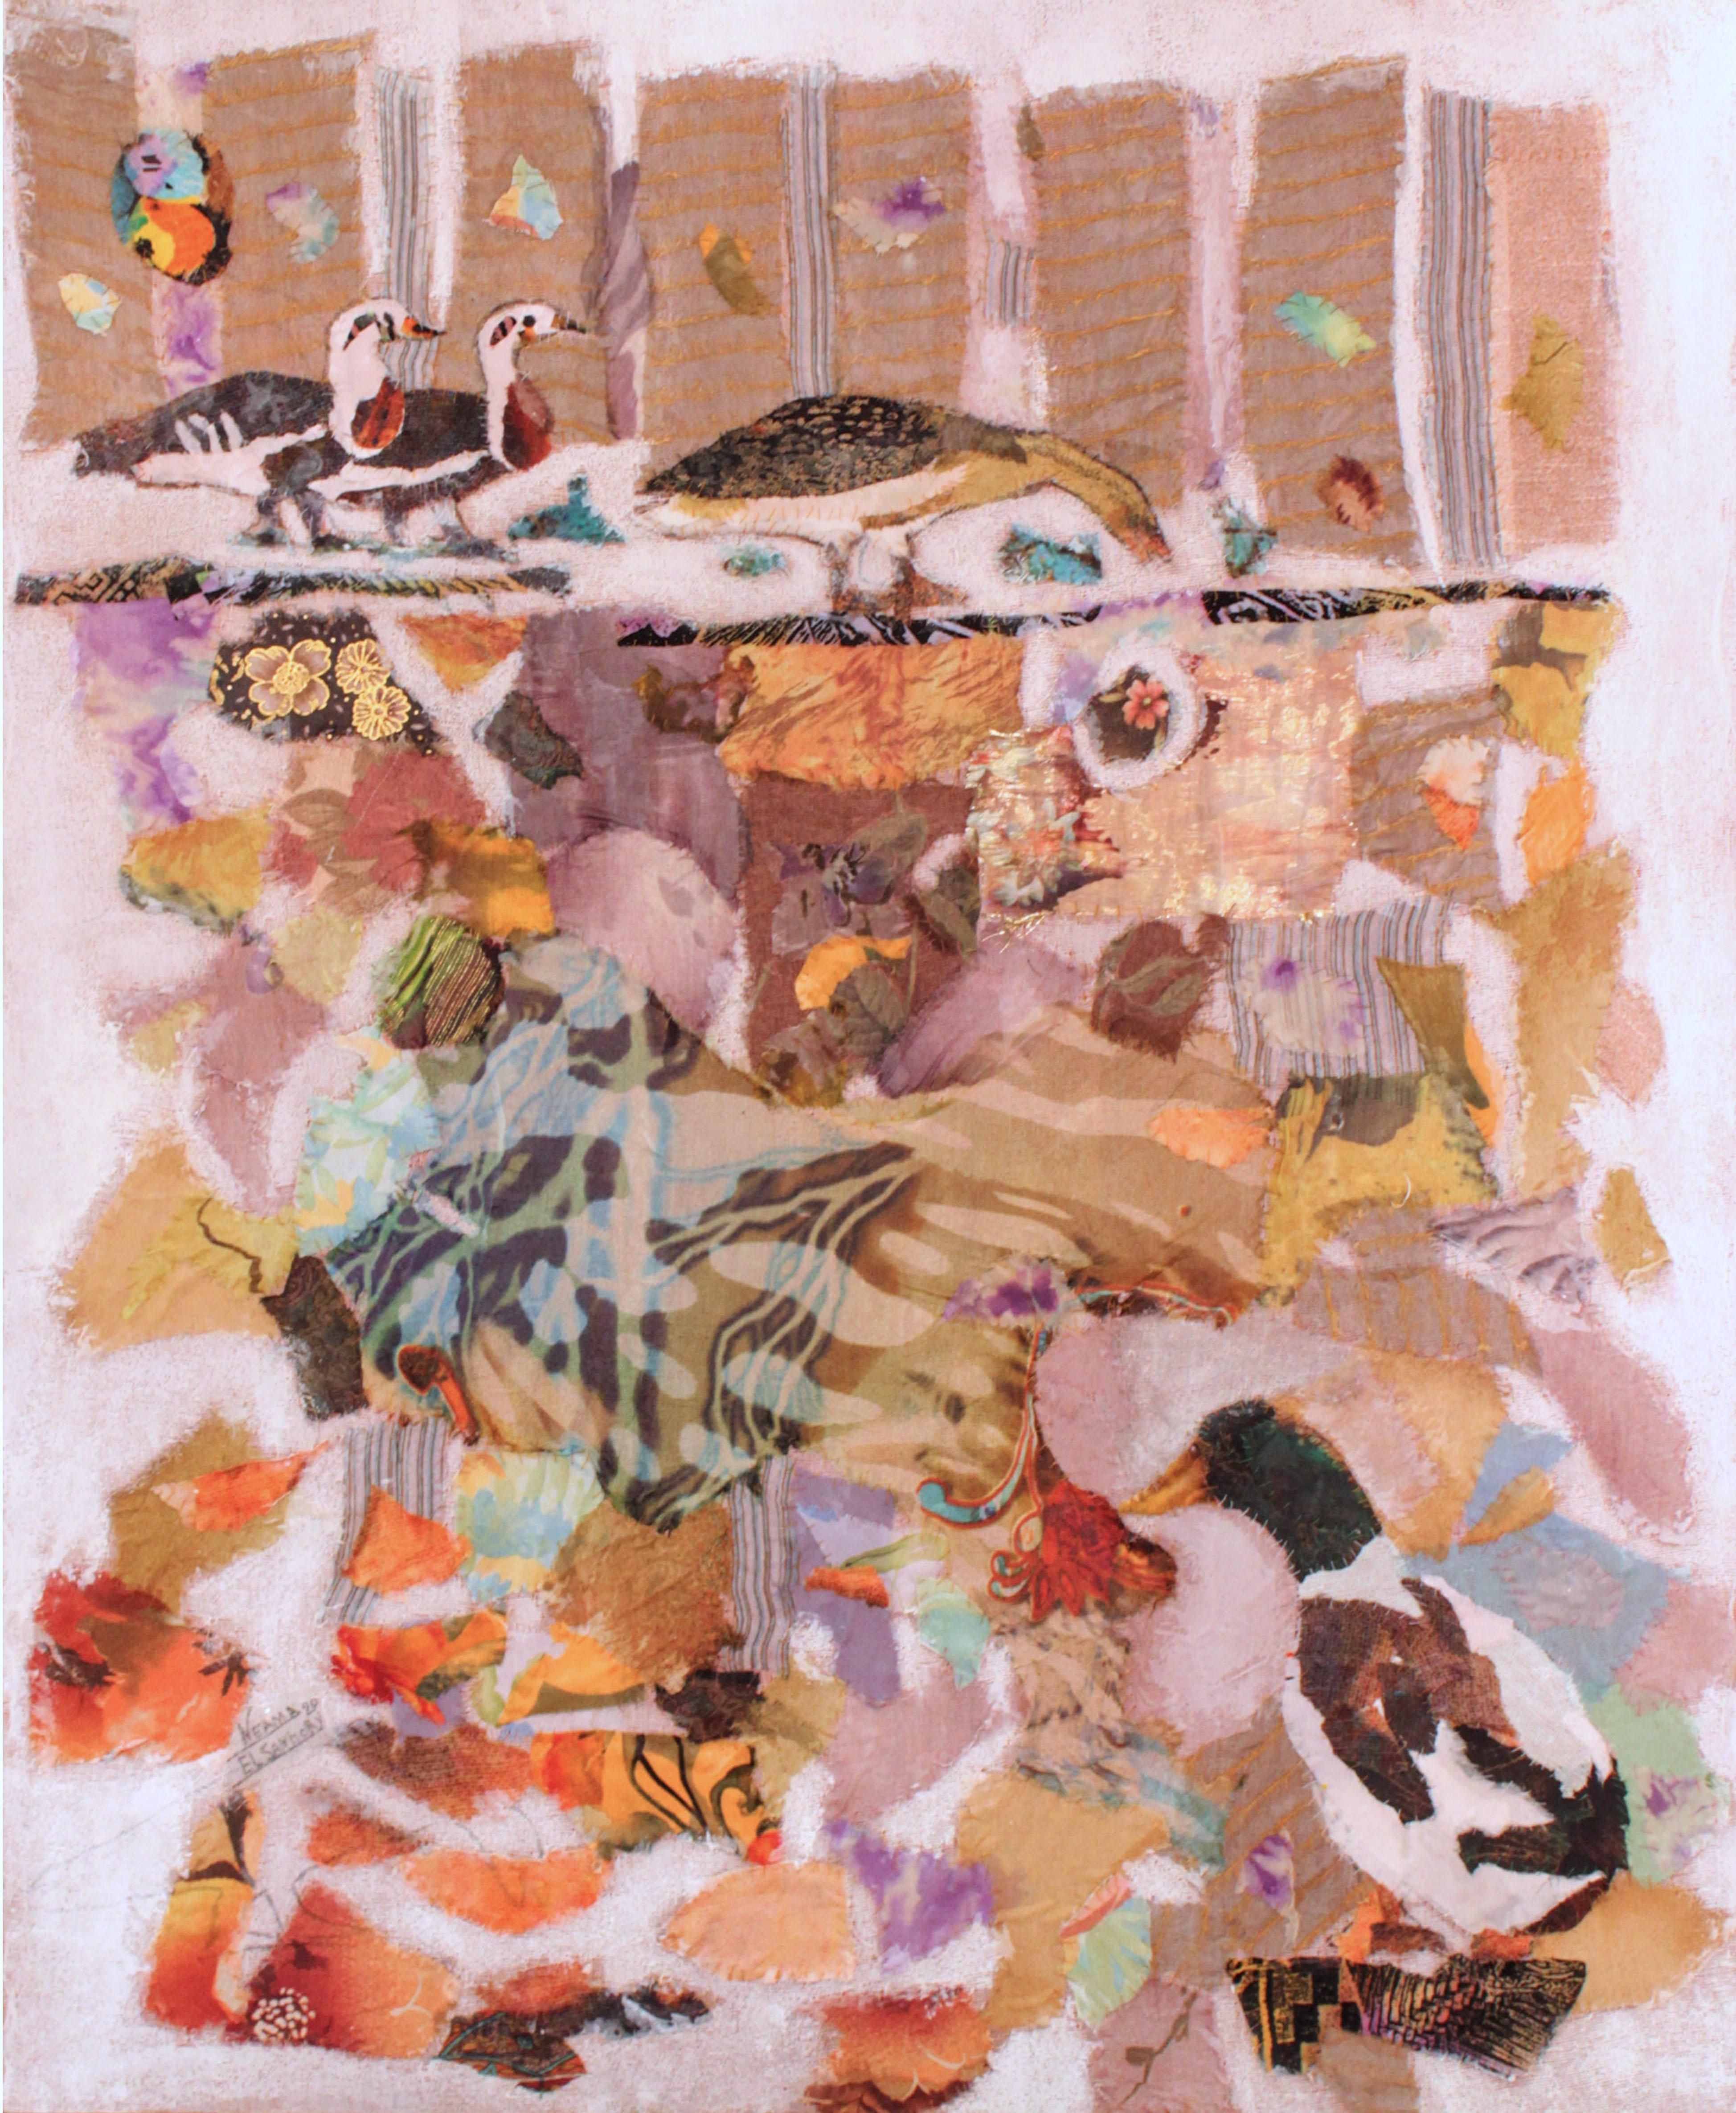 "Wasservogel" Abstrakte Collage 39" x 31" Zoll von Neama El Sanhoury

Stoffcollage auf Leinen auf Holz

KÜNSTLER BIO
Neama El Sanhourys Aufwachsen in einem, wie sie es nennt, kultivierten Haushalt hat vor allem dazu geführt, dass sie den Reichtum